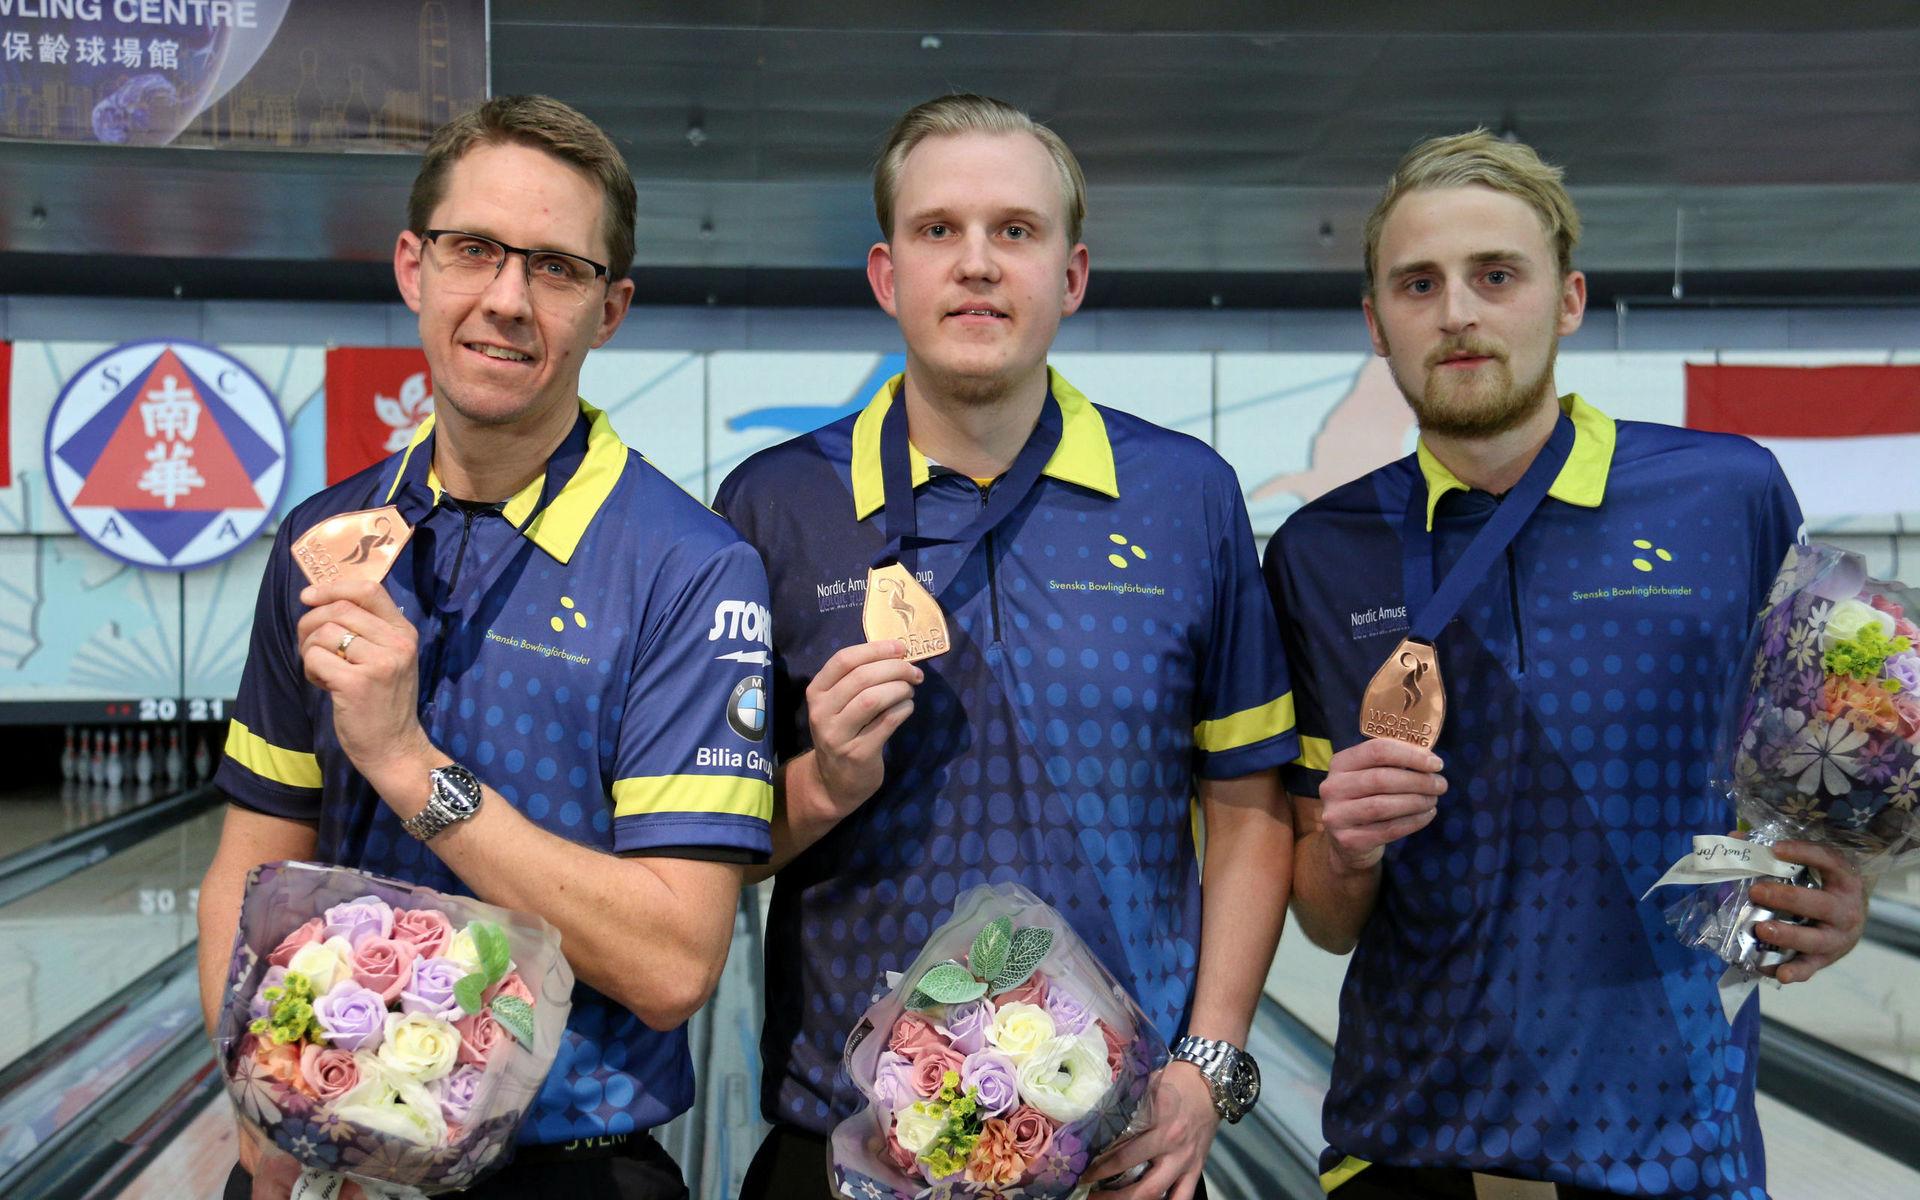 Sveriges Martin Larsen, Mattias Wetterberg och Jesper Svensson efter att ha tagit brons i 3-manna i VM i bowling. 